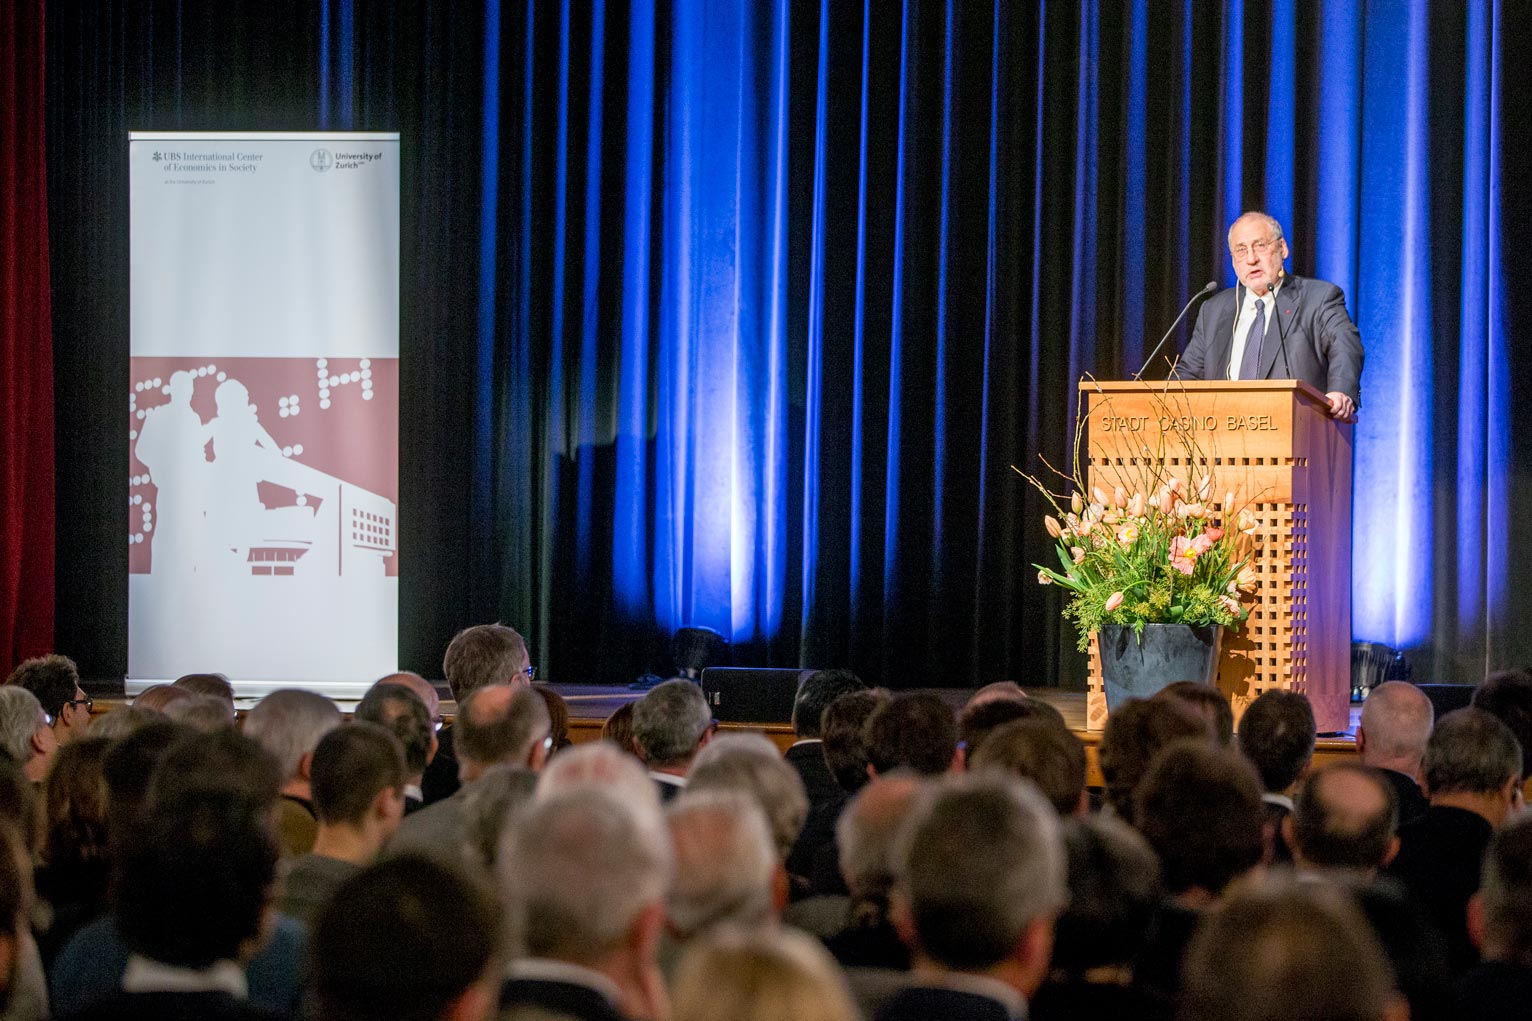 Prof. Joseph E. Stiglitz at the public lecture in Basel